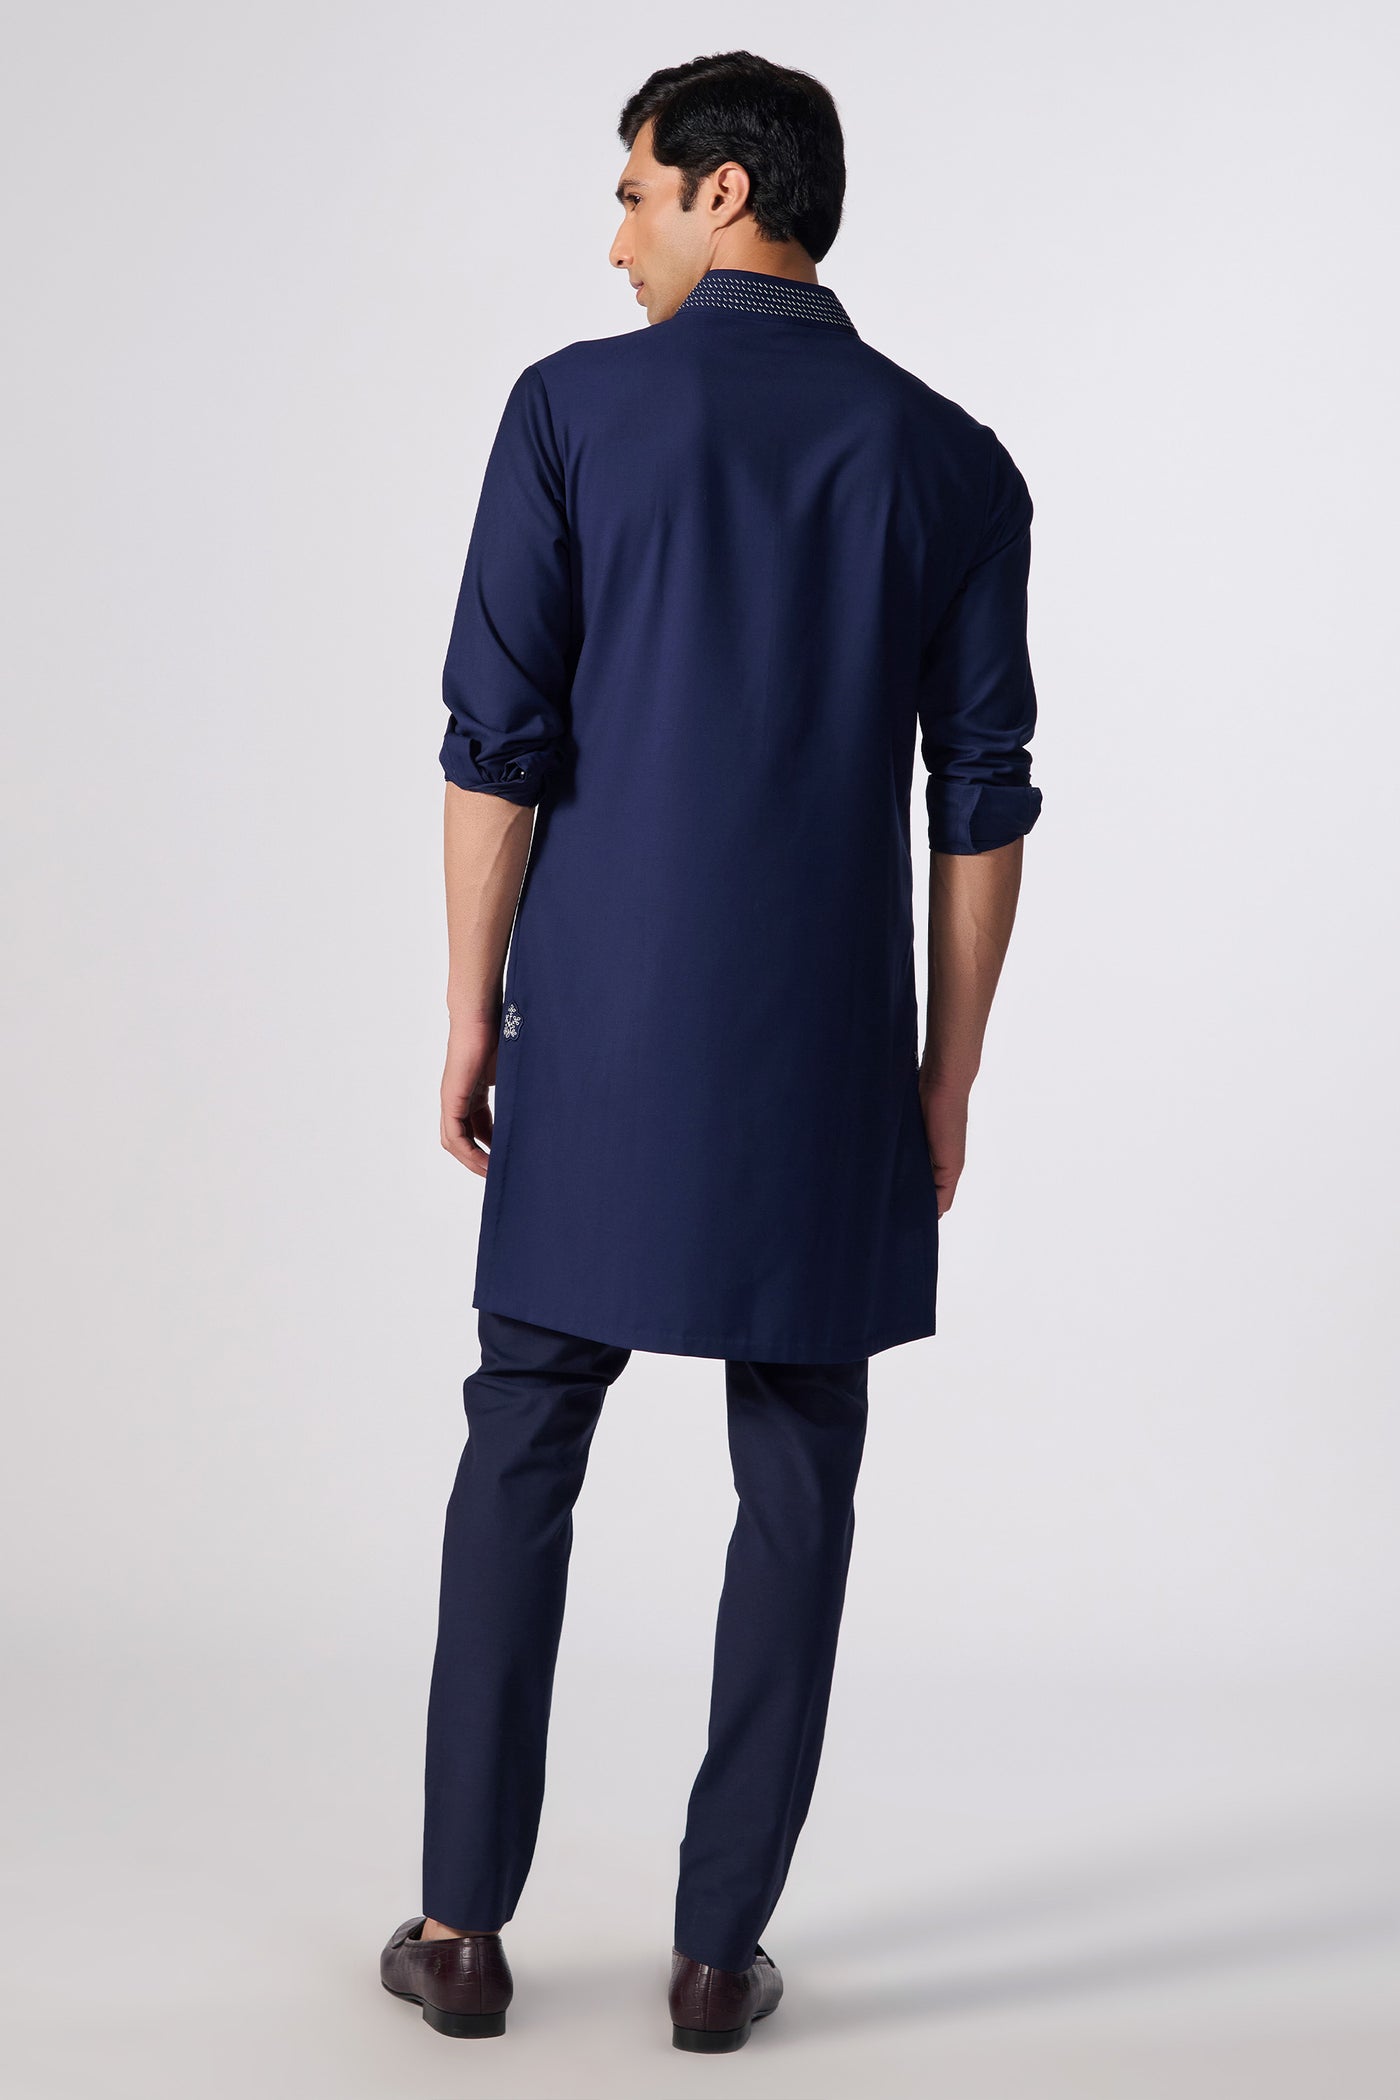 Shantanu & Nikhil Menswear Navy Slim Fit Kurta with Embroidered Kurta indian designer wear online shopping melange singapore